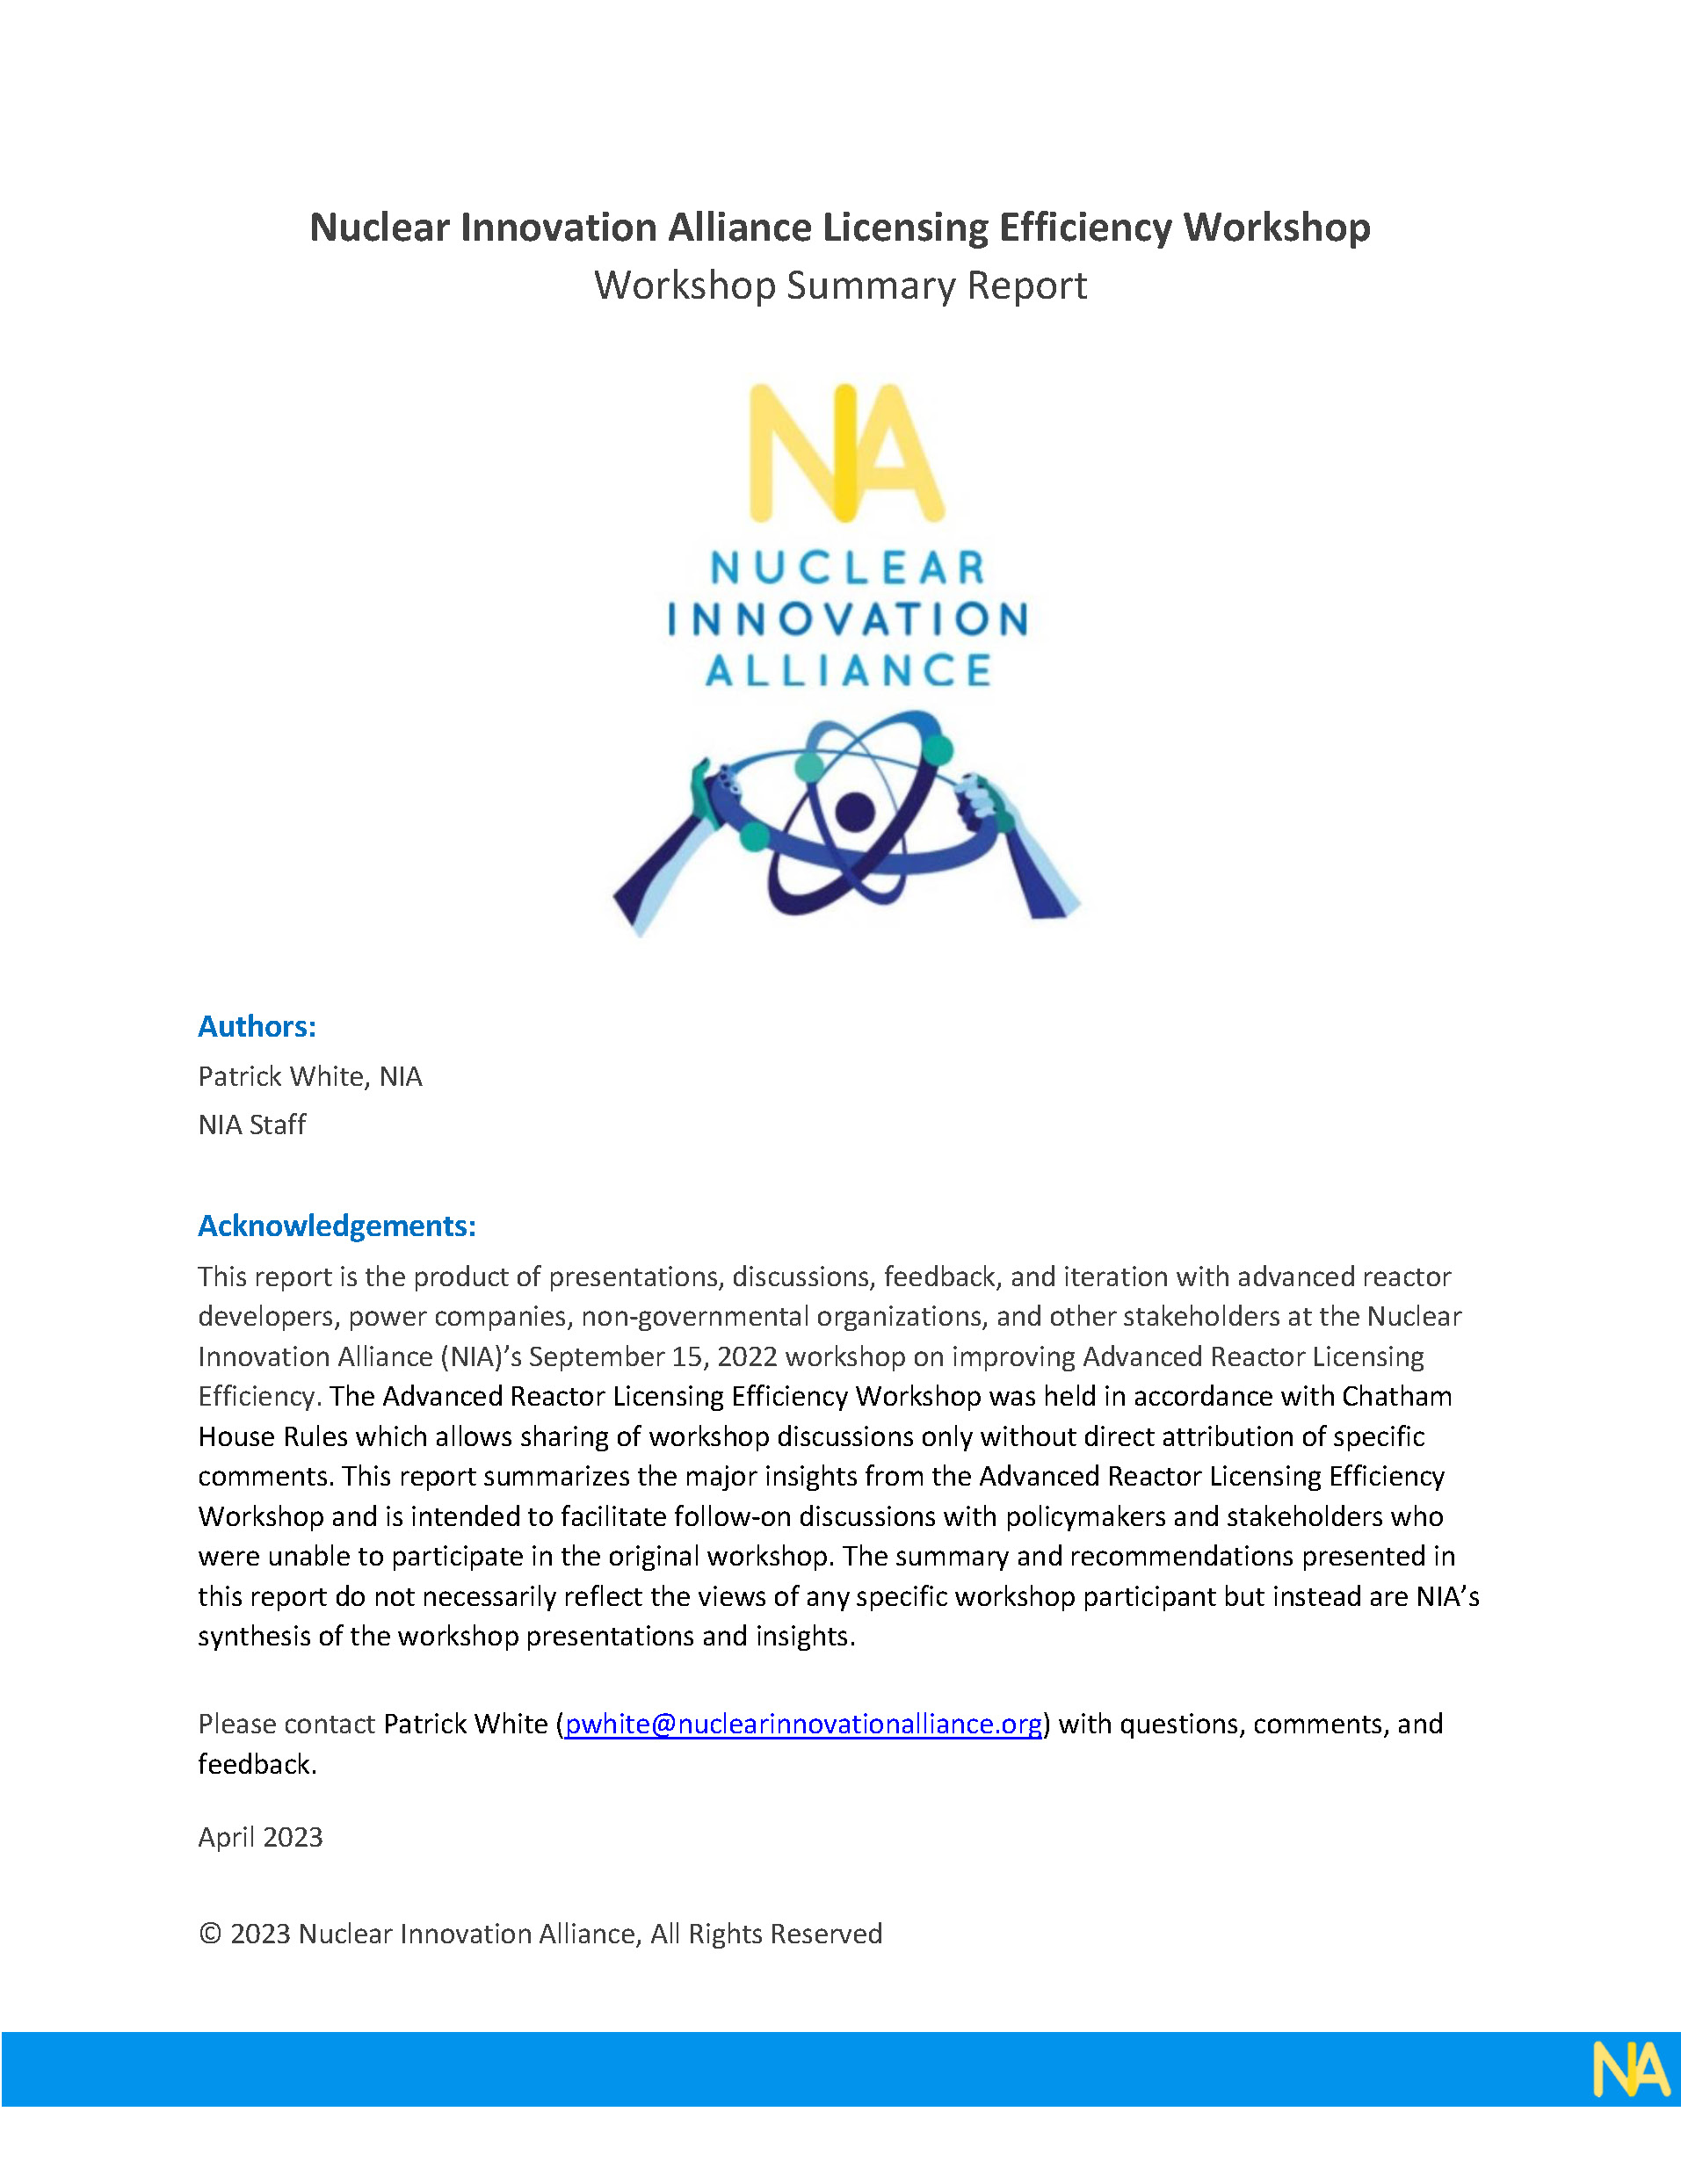 NIA Licensing Efficiency Workshop Summary Report